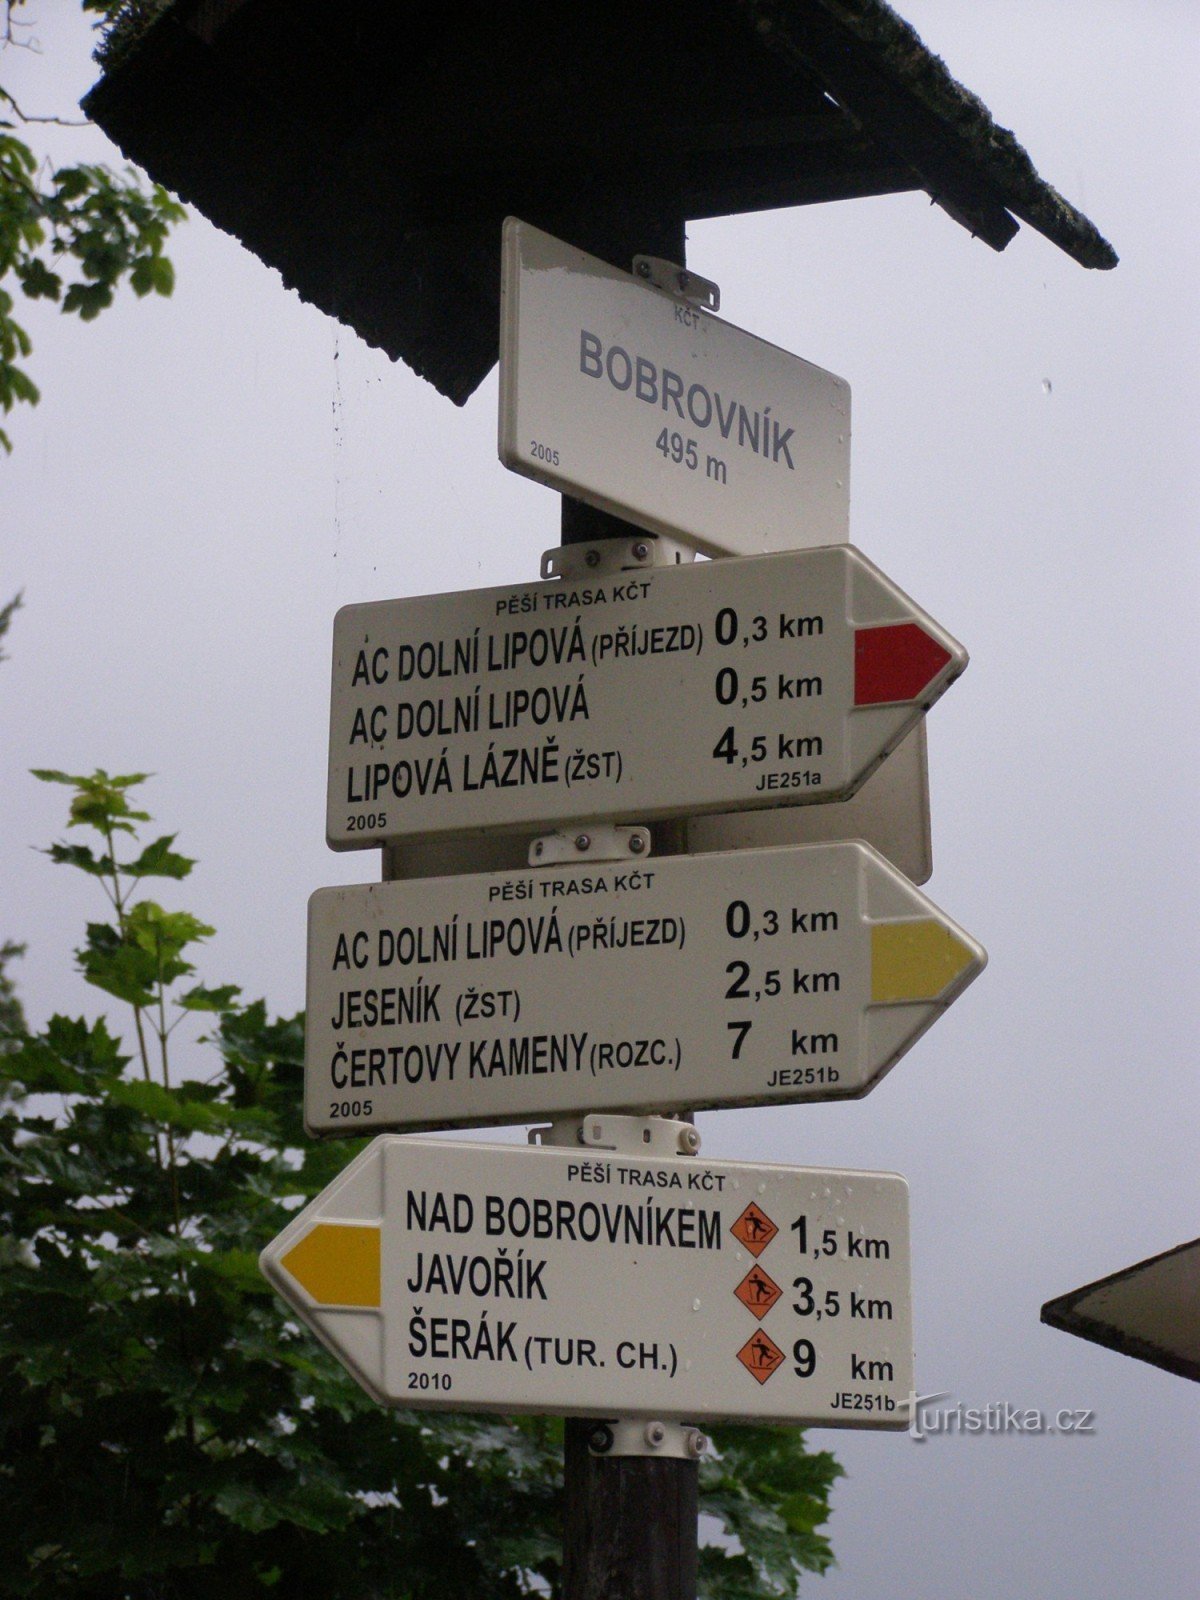 encruzilhada turística - Bobrovník